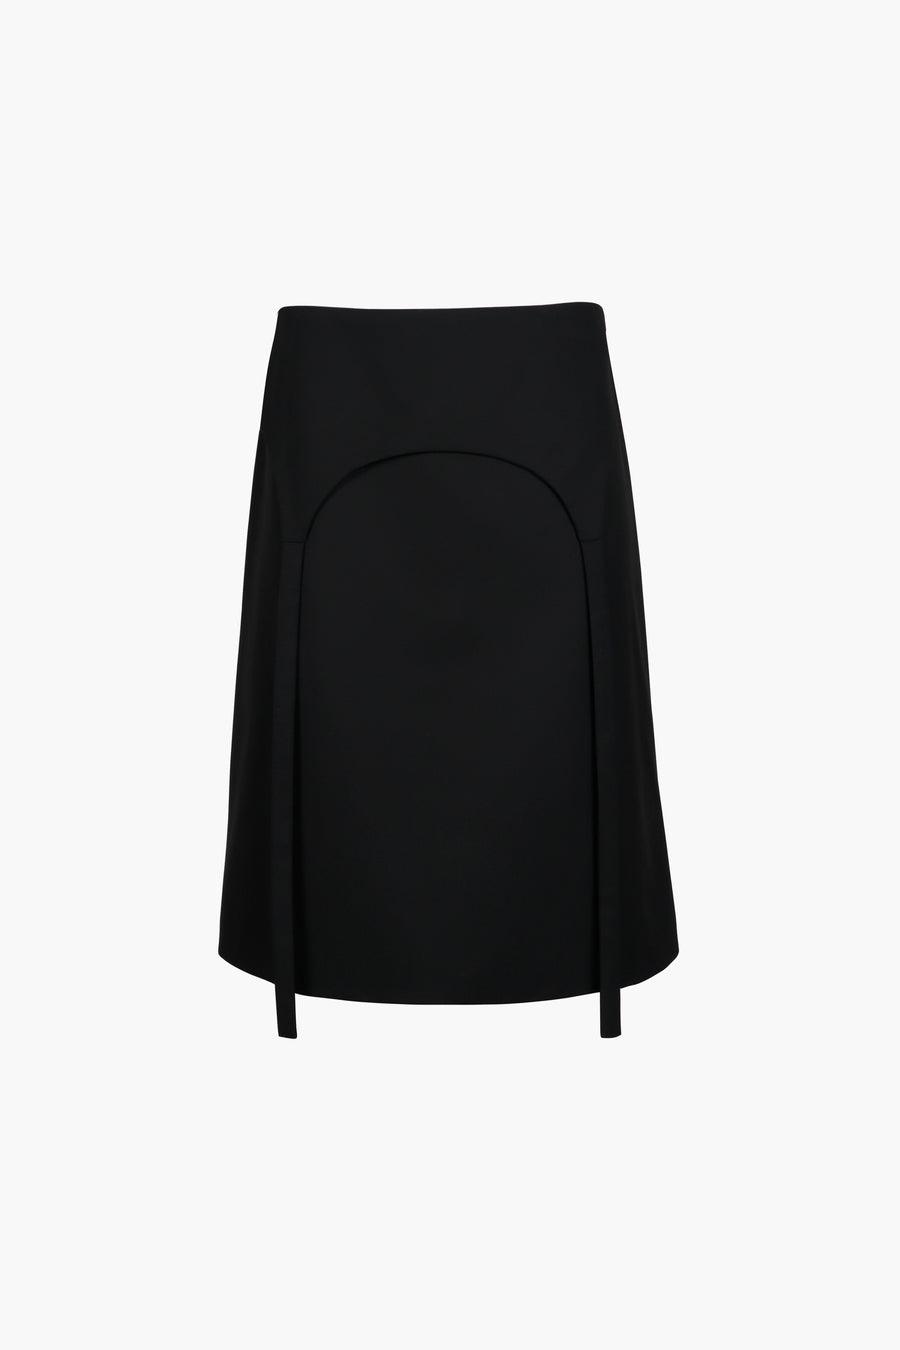 Knee length skirt in black with garter strap detail